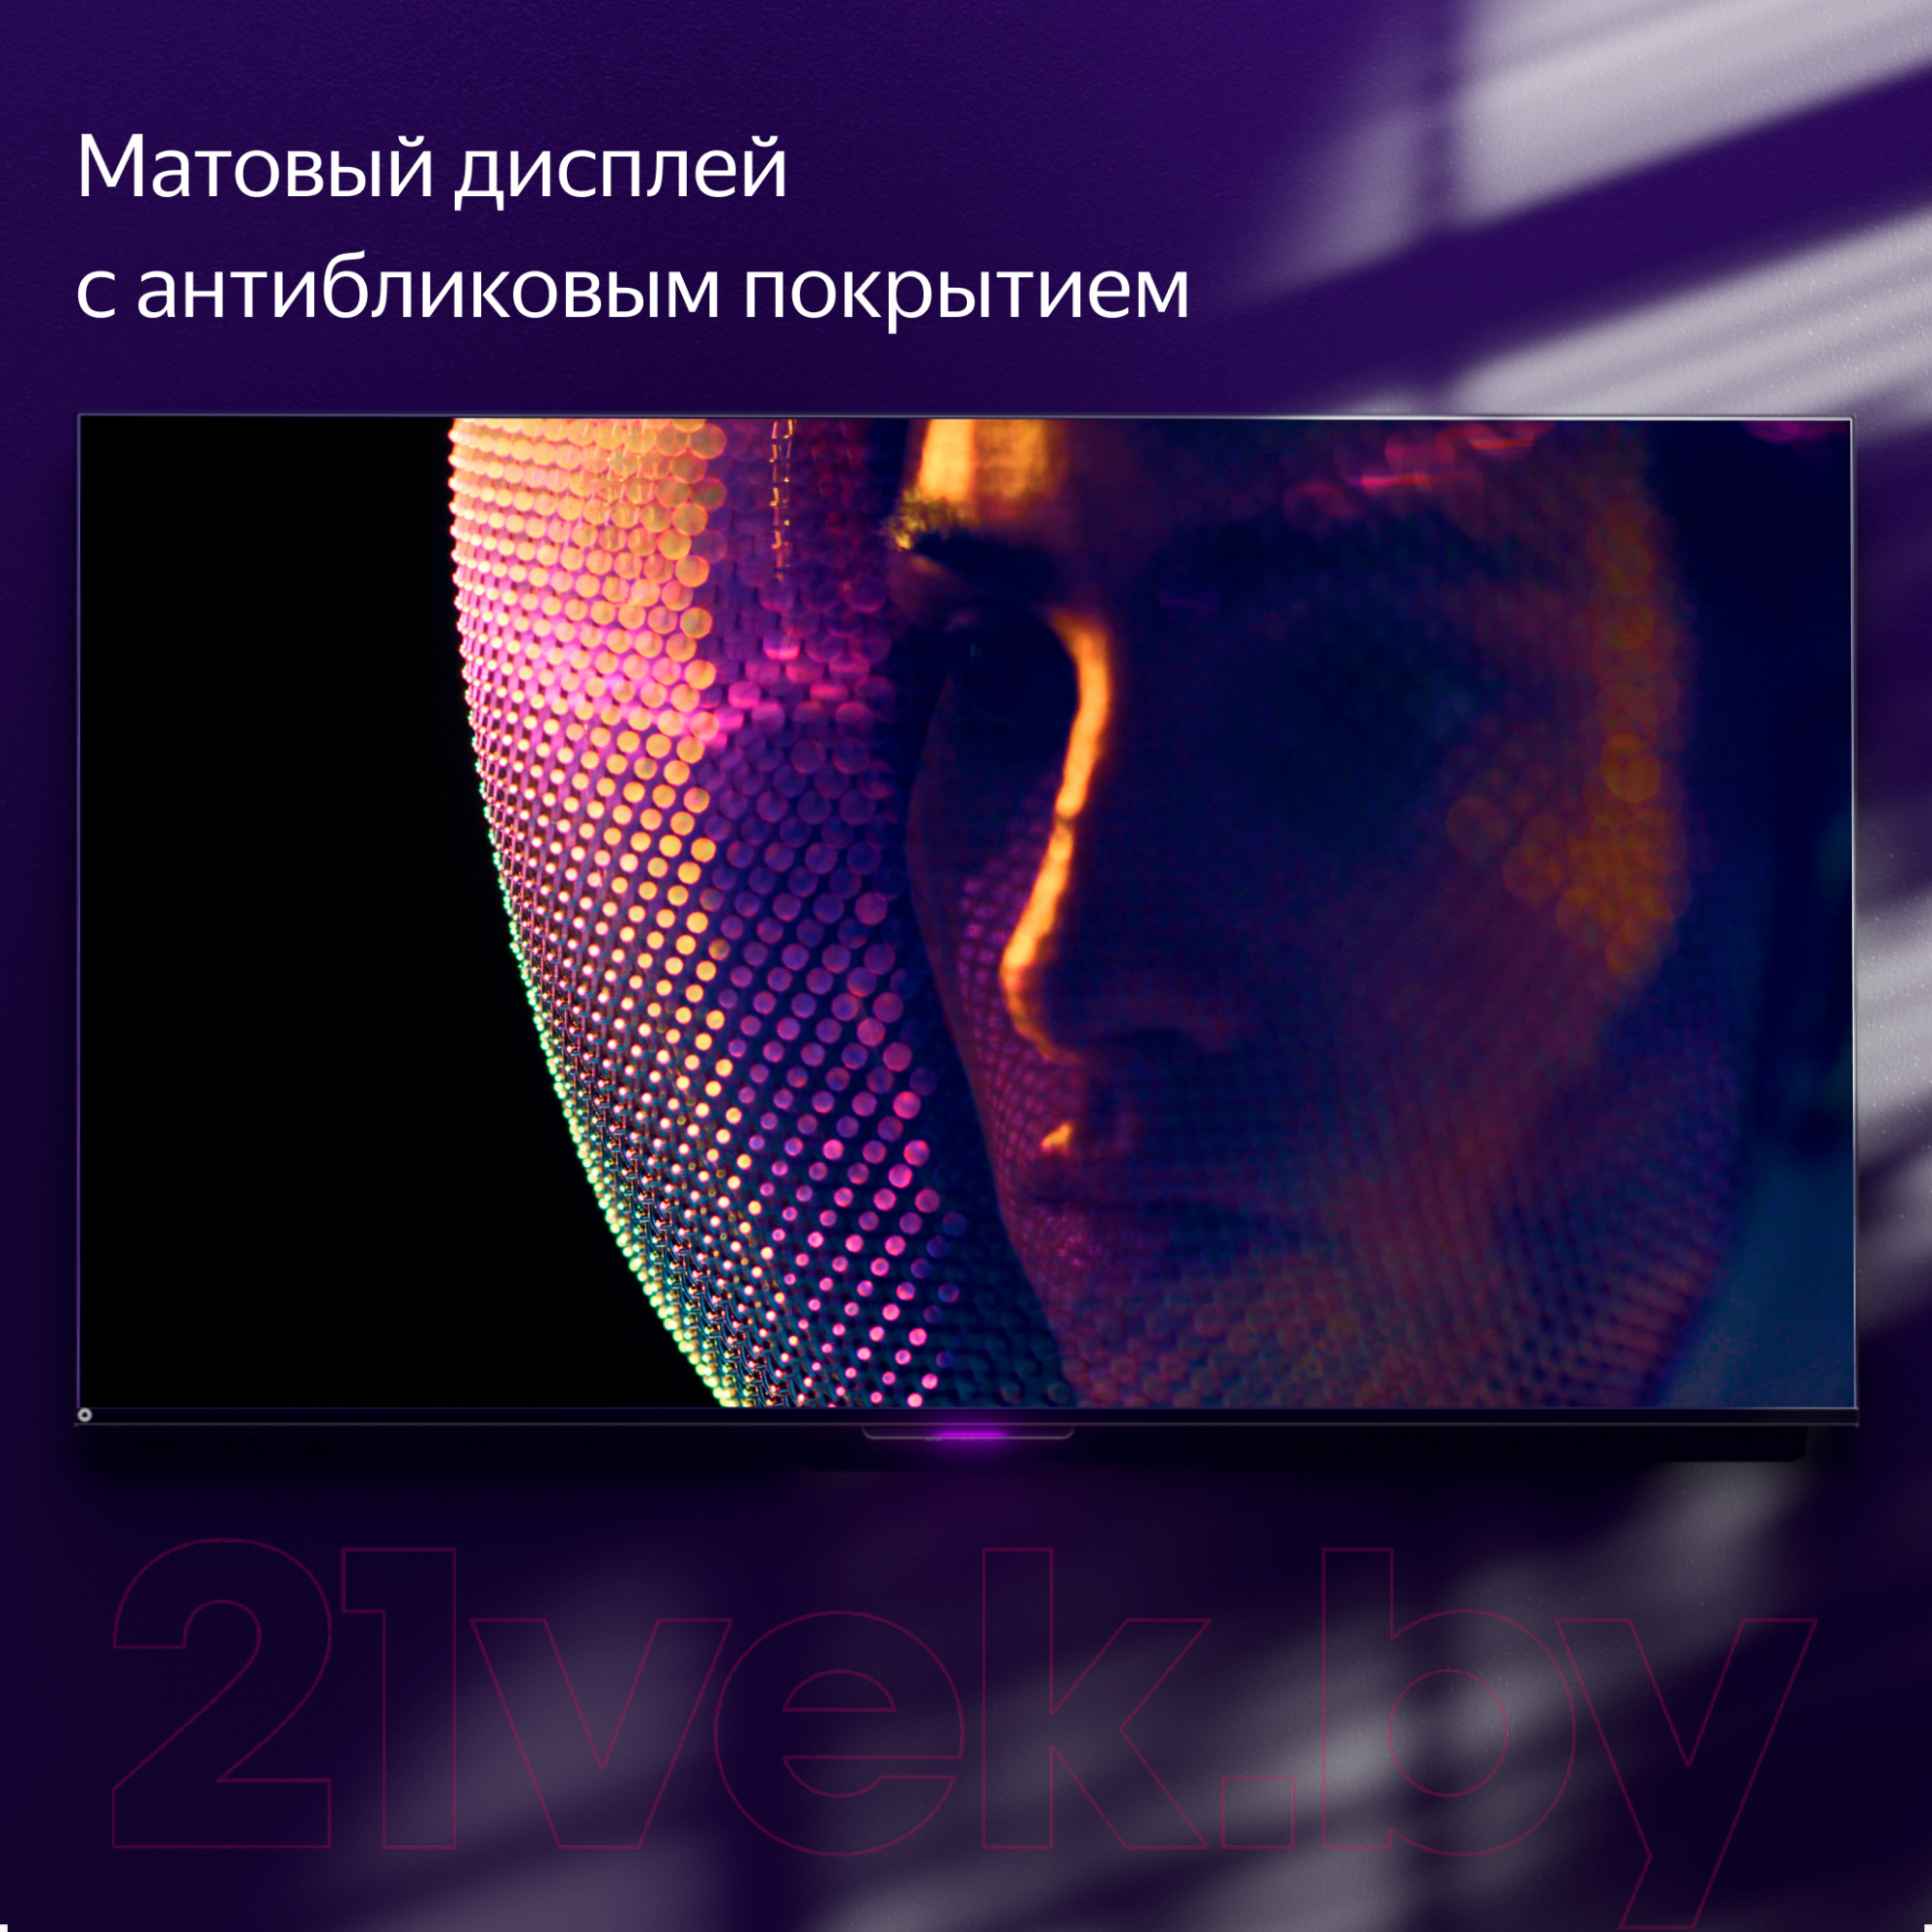 Телевизор Яндекс ТВ Станция Про с Алисой 55